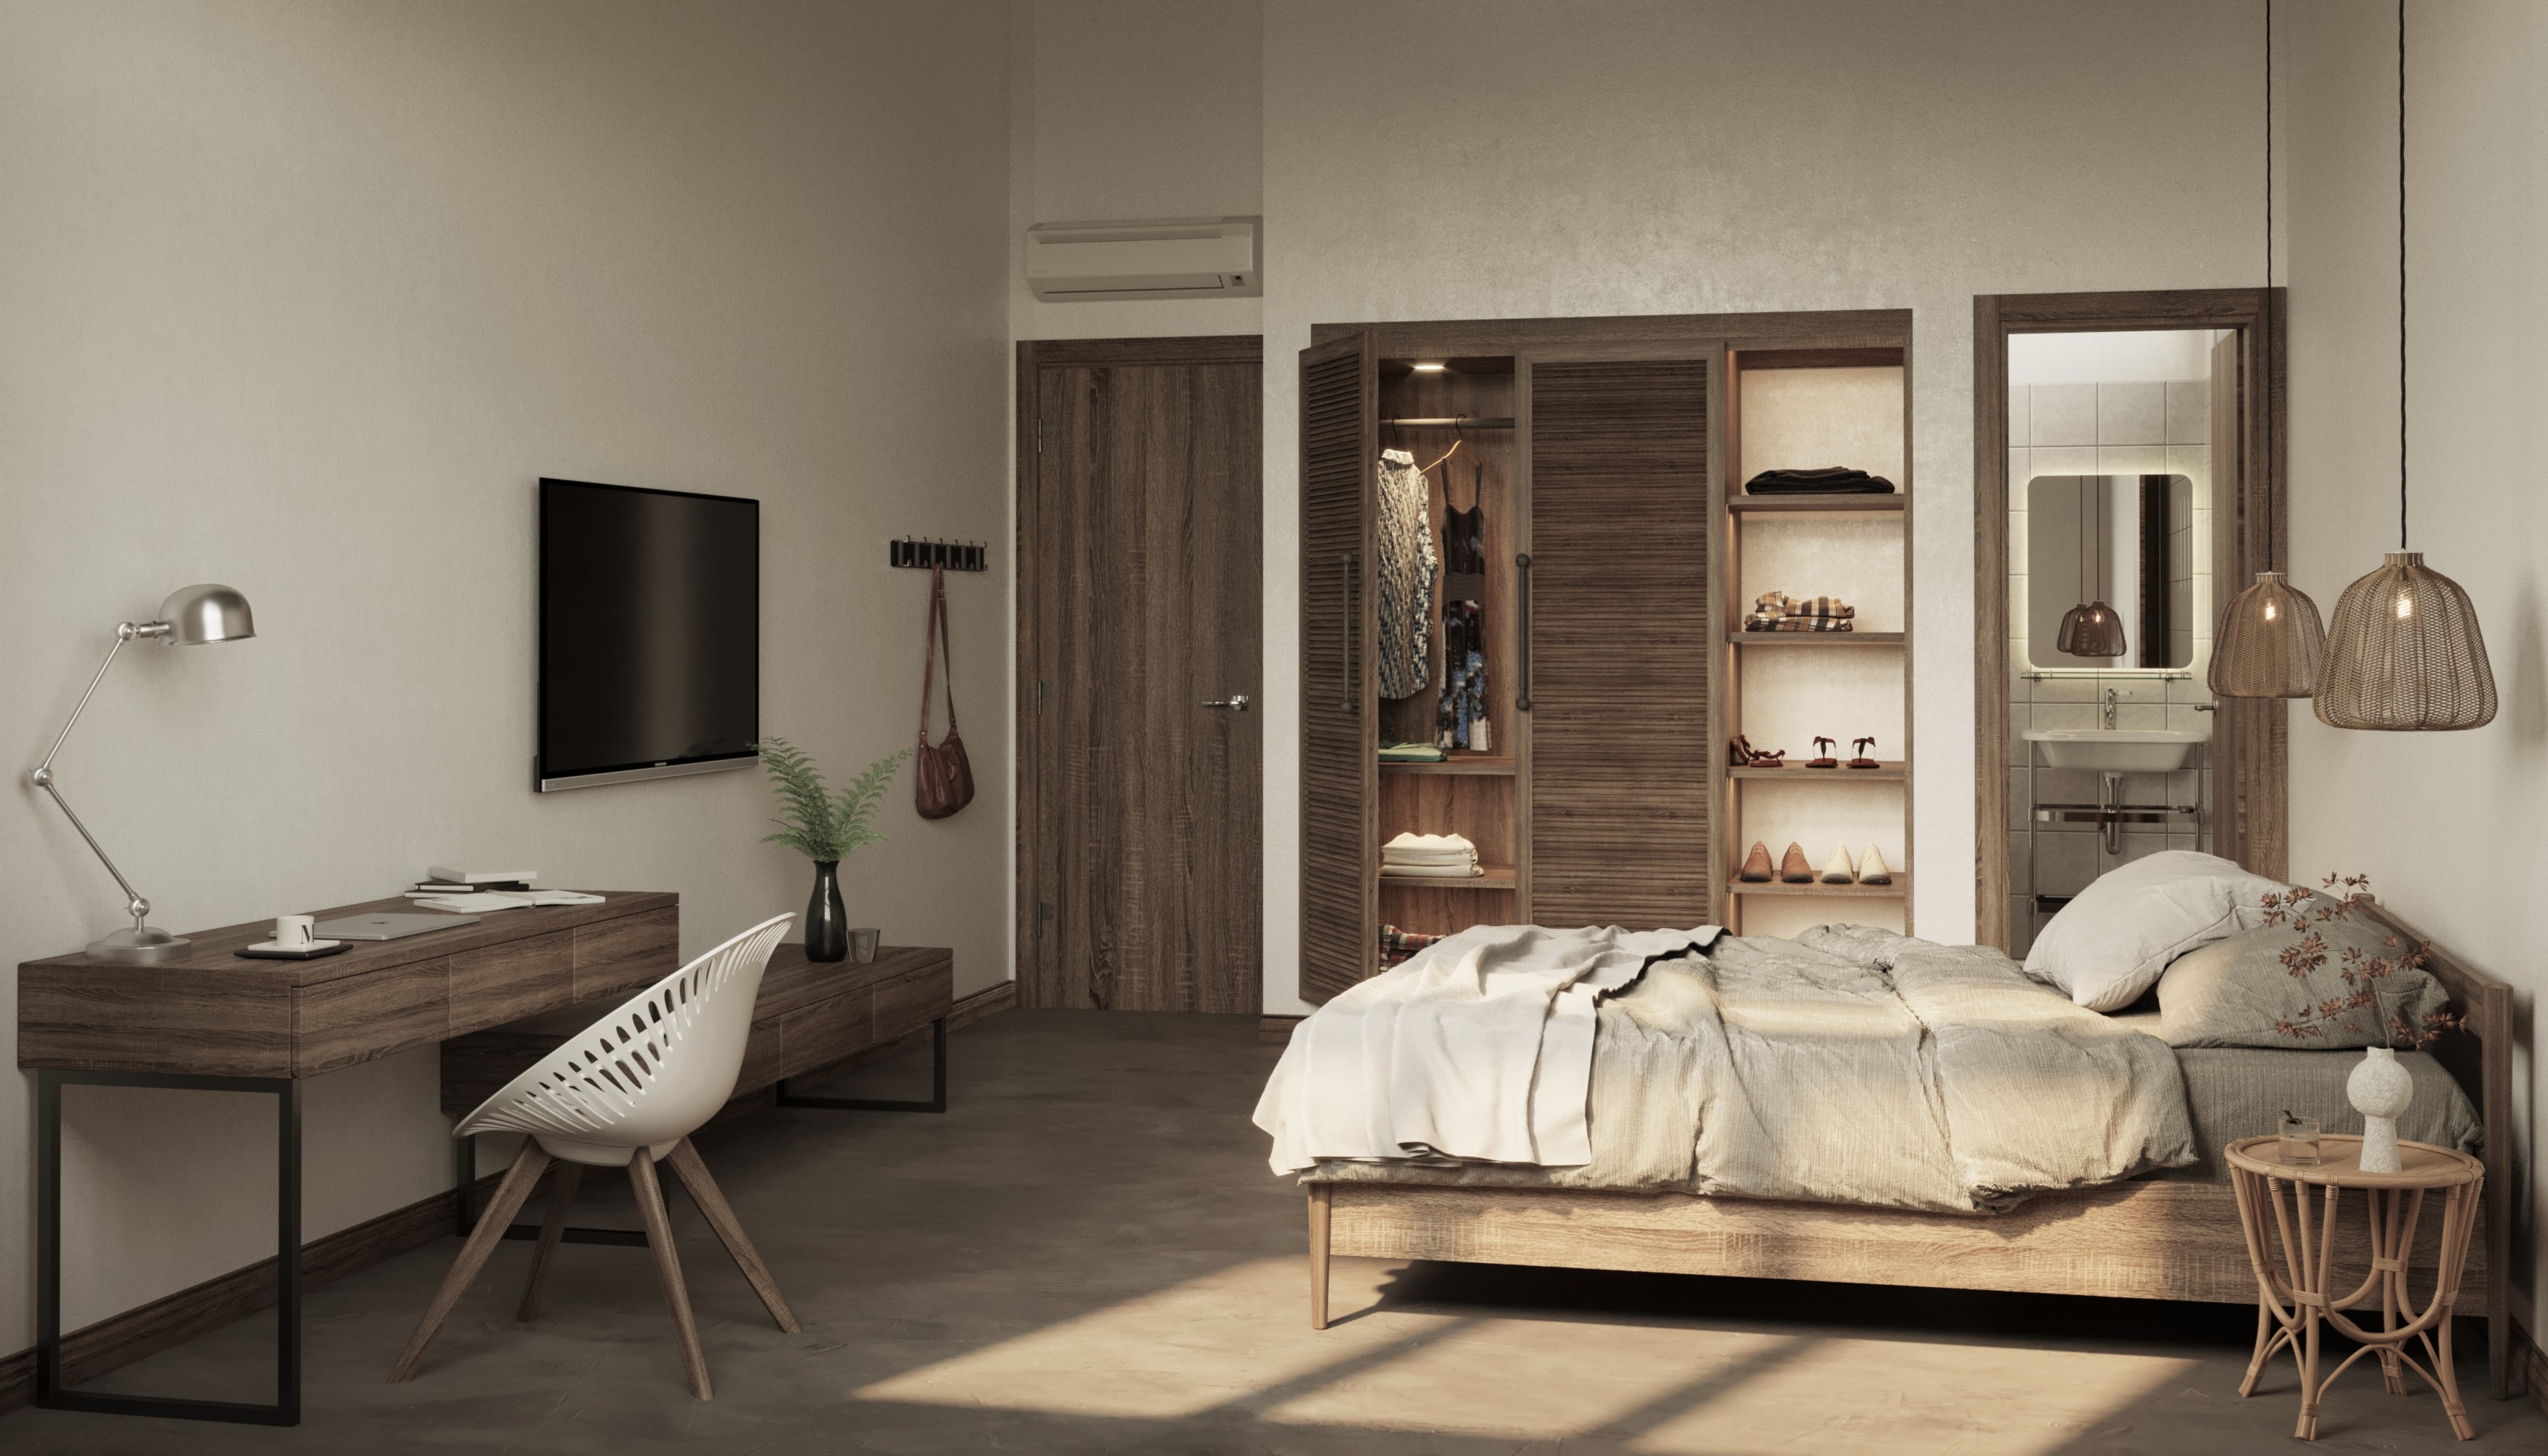 Phòng ngủ với nội thất ứng dụng chất liệu gỗ tự nhiên tông màu trầm tạo không gian ấm áp nhẹ nhàng